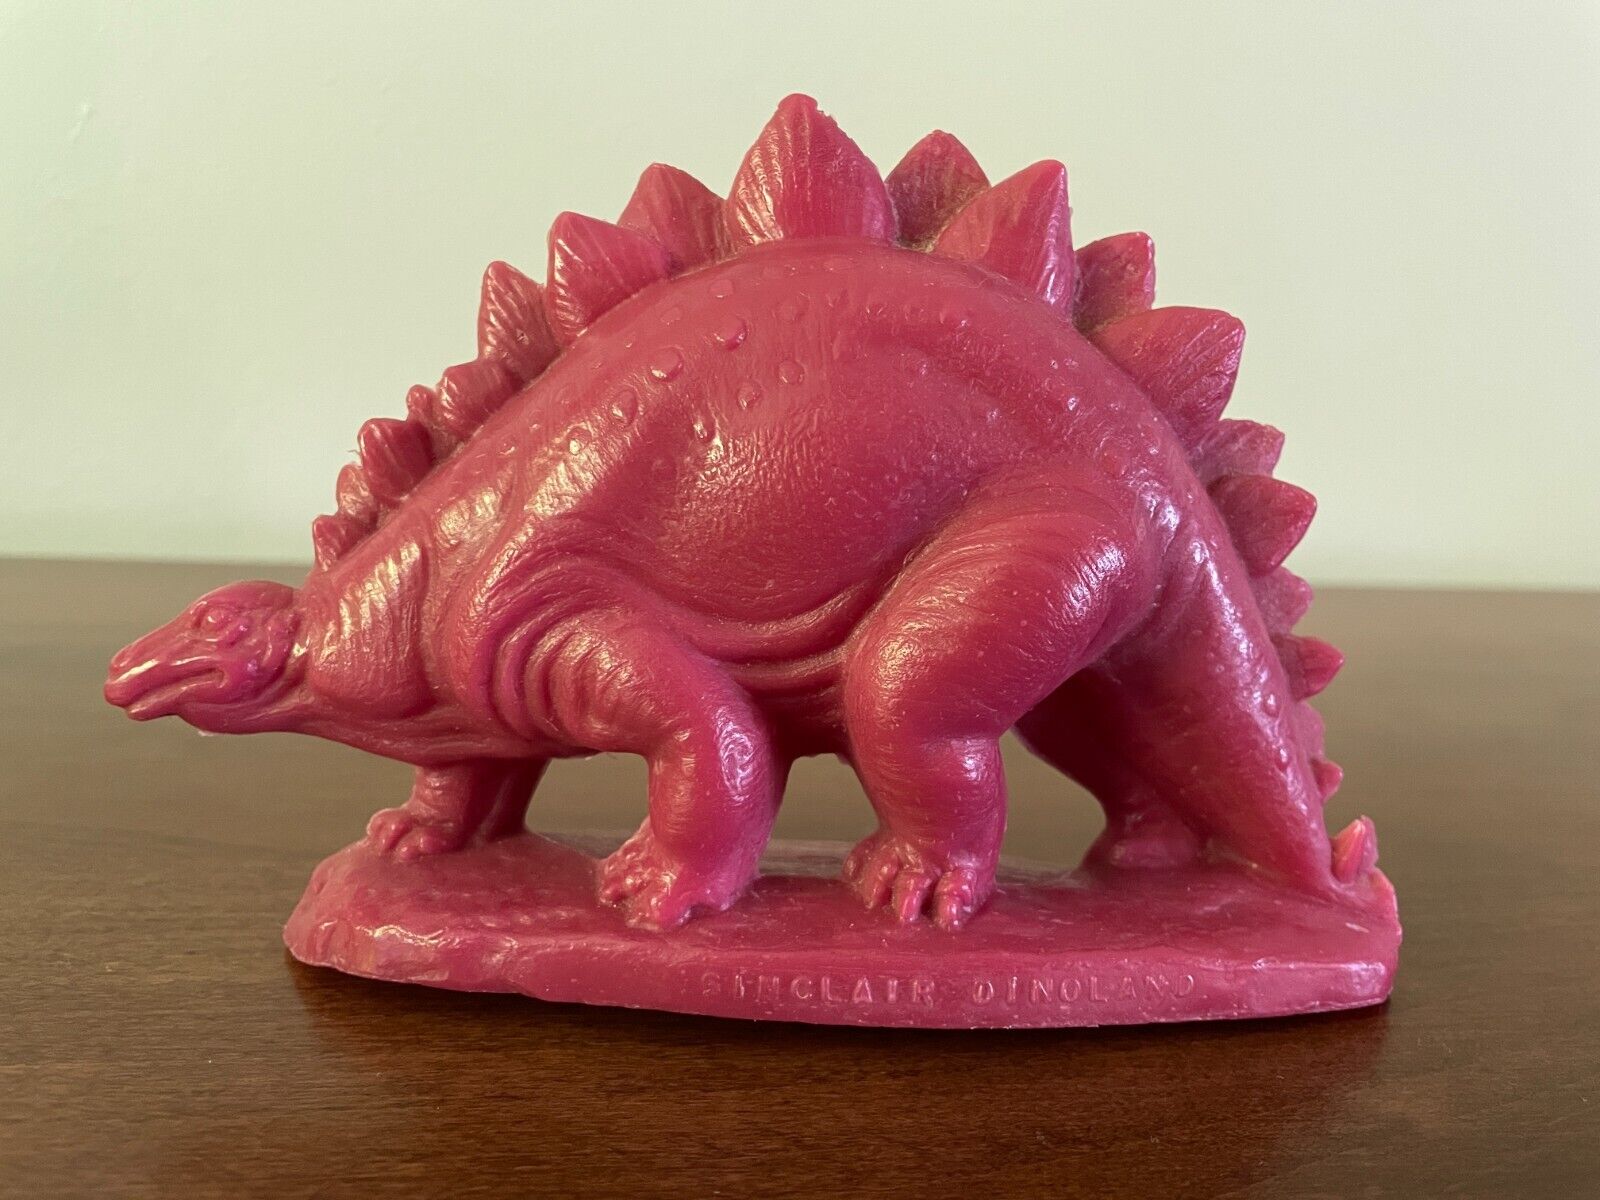 Mold-A-Rama Sinclair Dinoland Stegosaurus Dinosaur  (after World's Fair) - Red